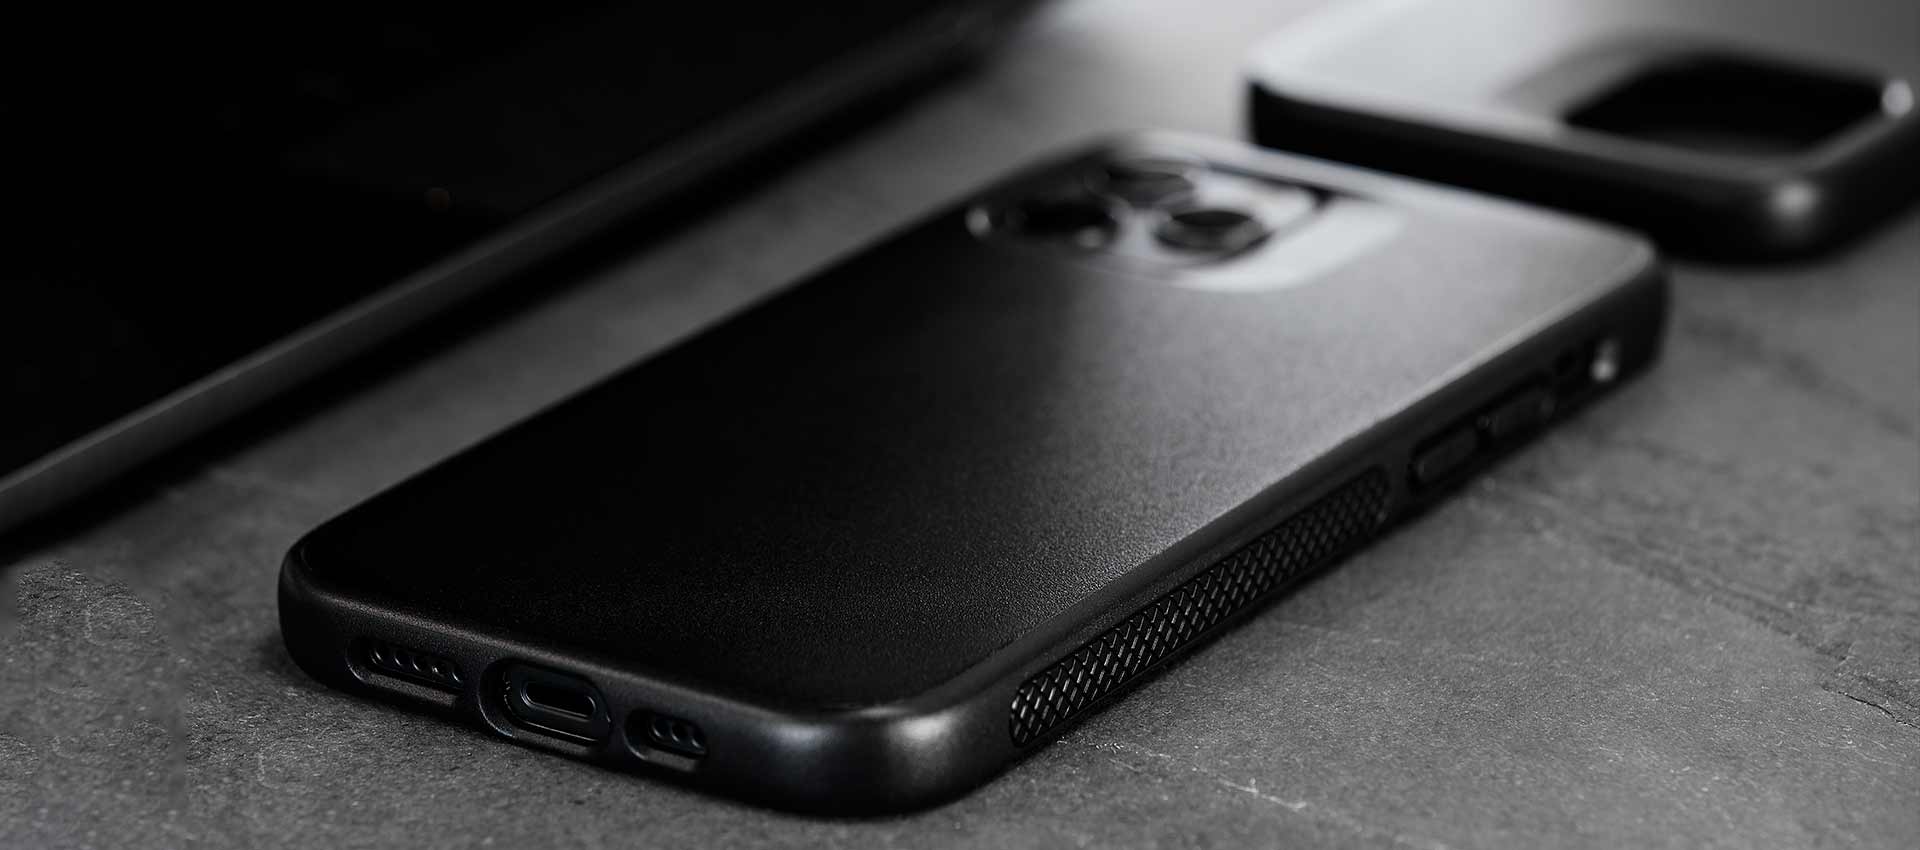 Synthesis (MagSafe)  Sleek, rugged iPhone 13 Pro case – Caudabe